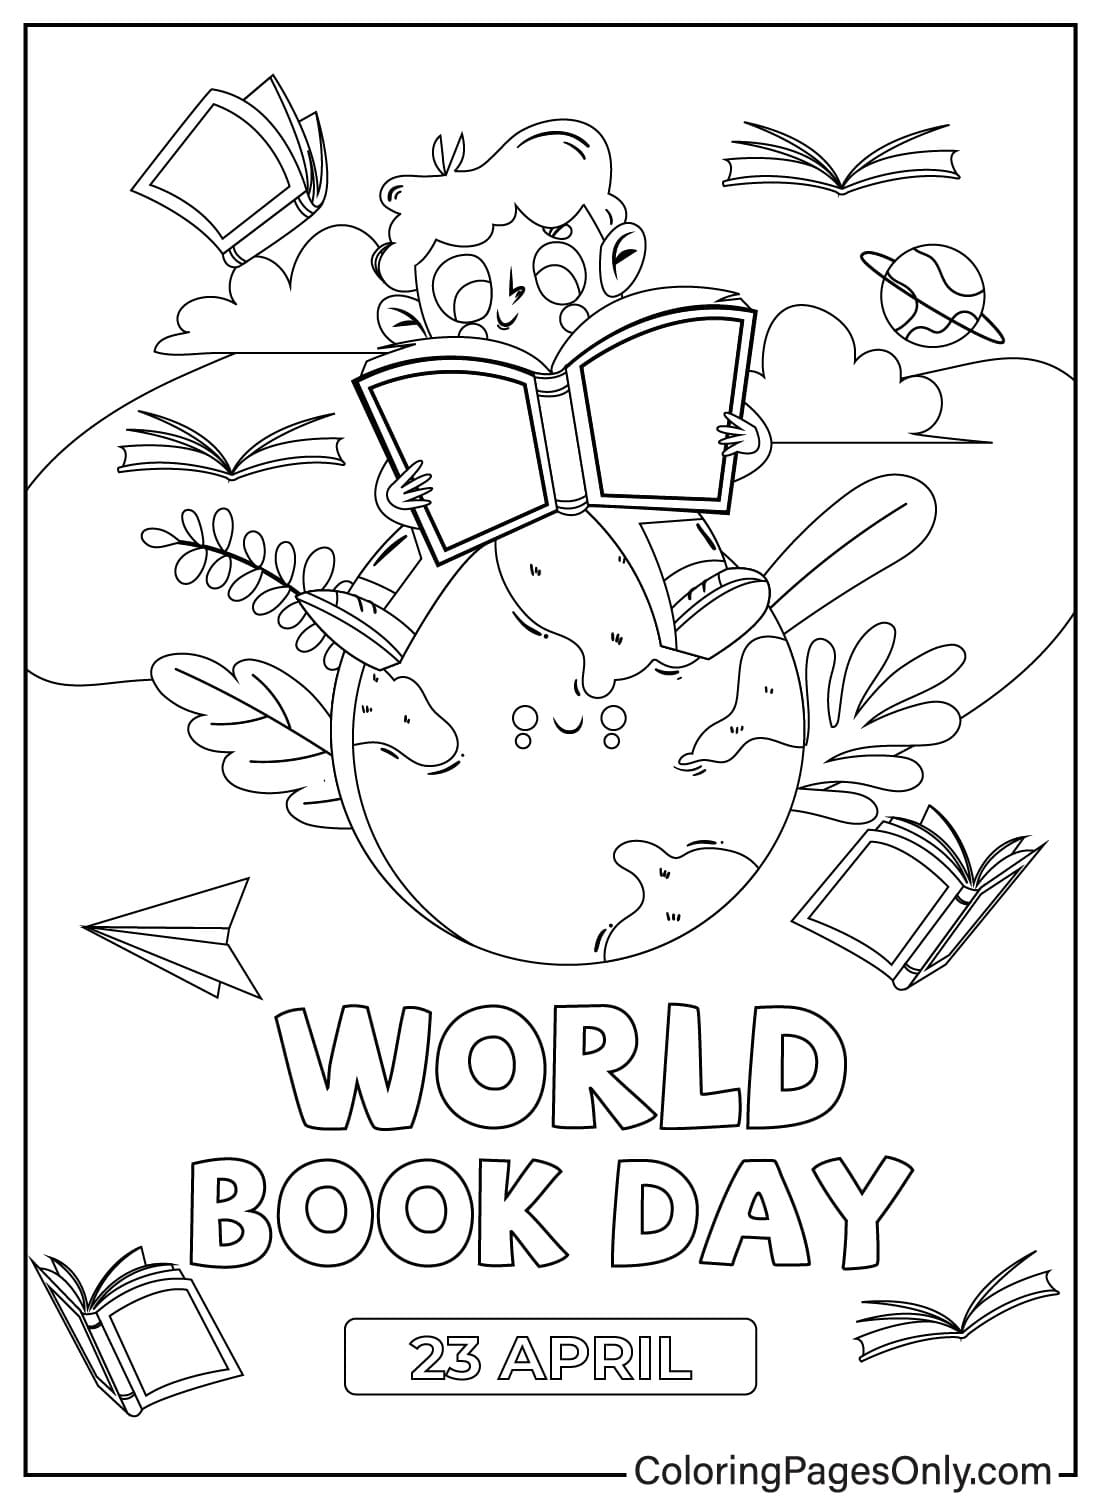 صفحات تلوين مجانية لليوم العالمي للكتاب للأطفال والكبار من اليوم العالمي للكتاب